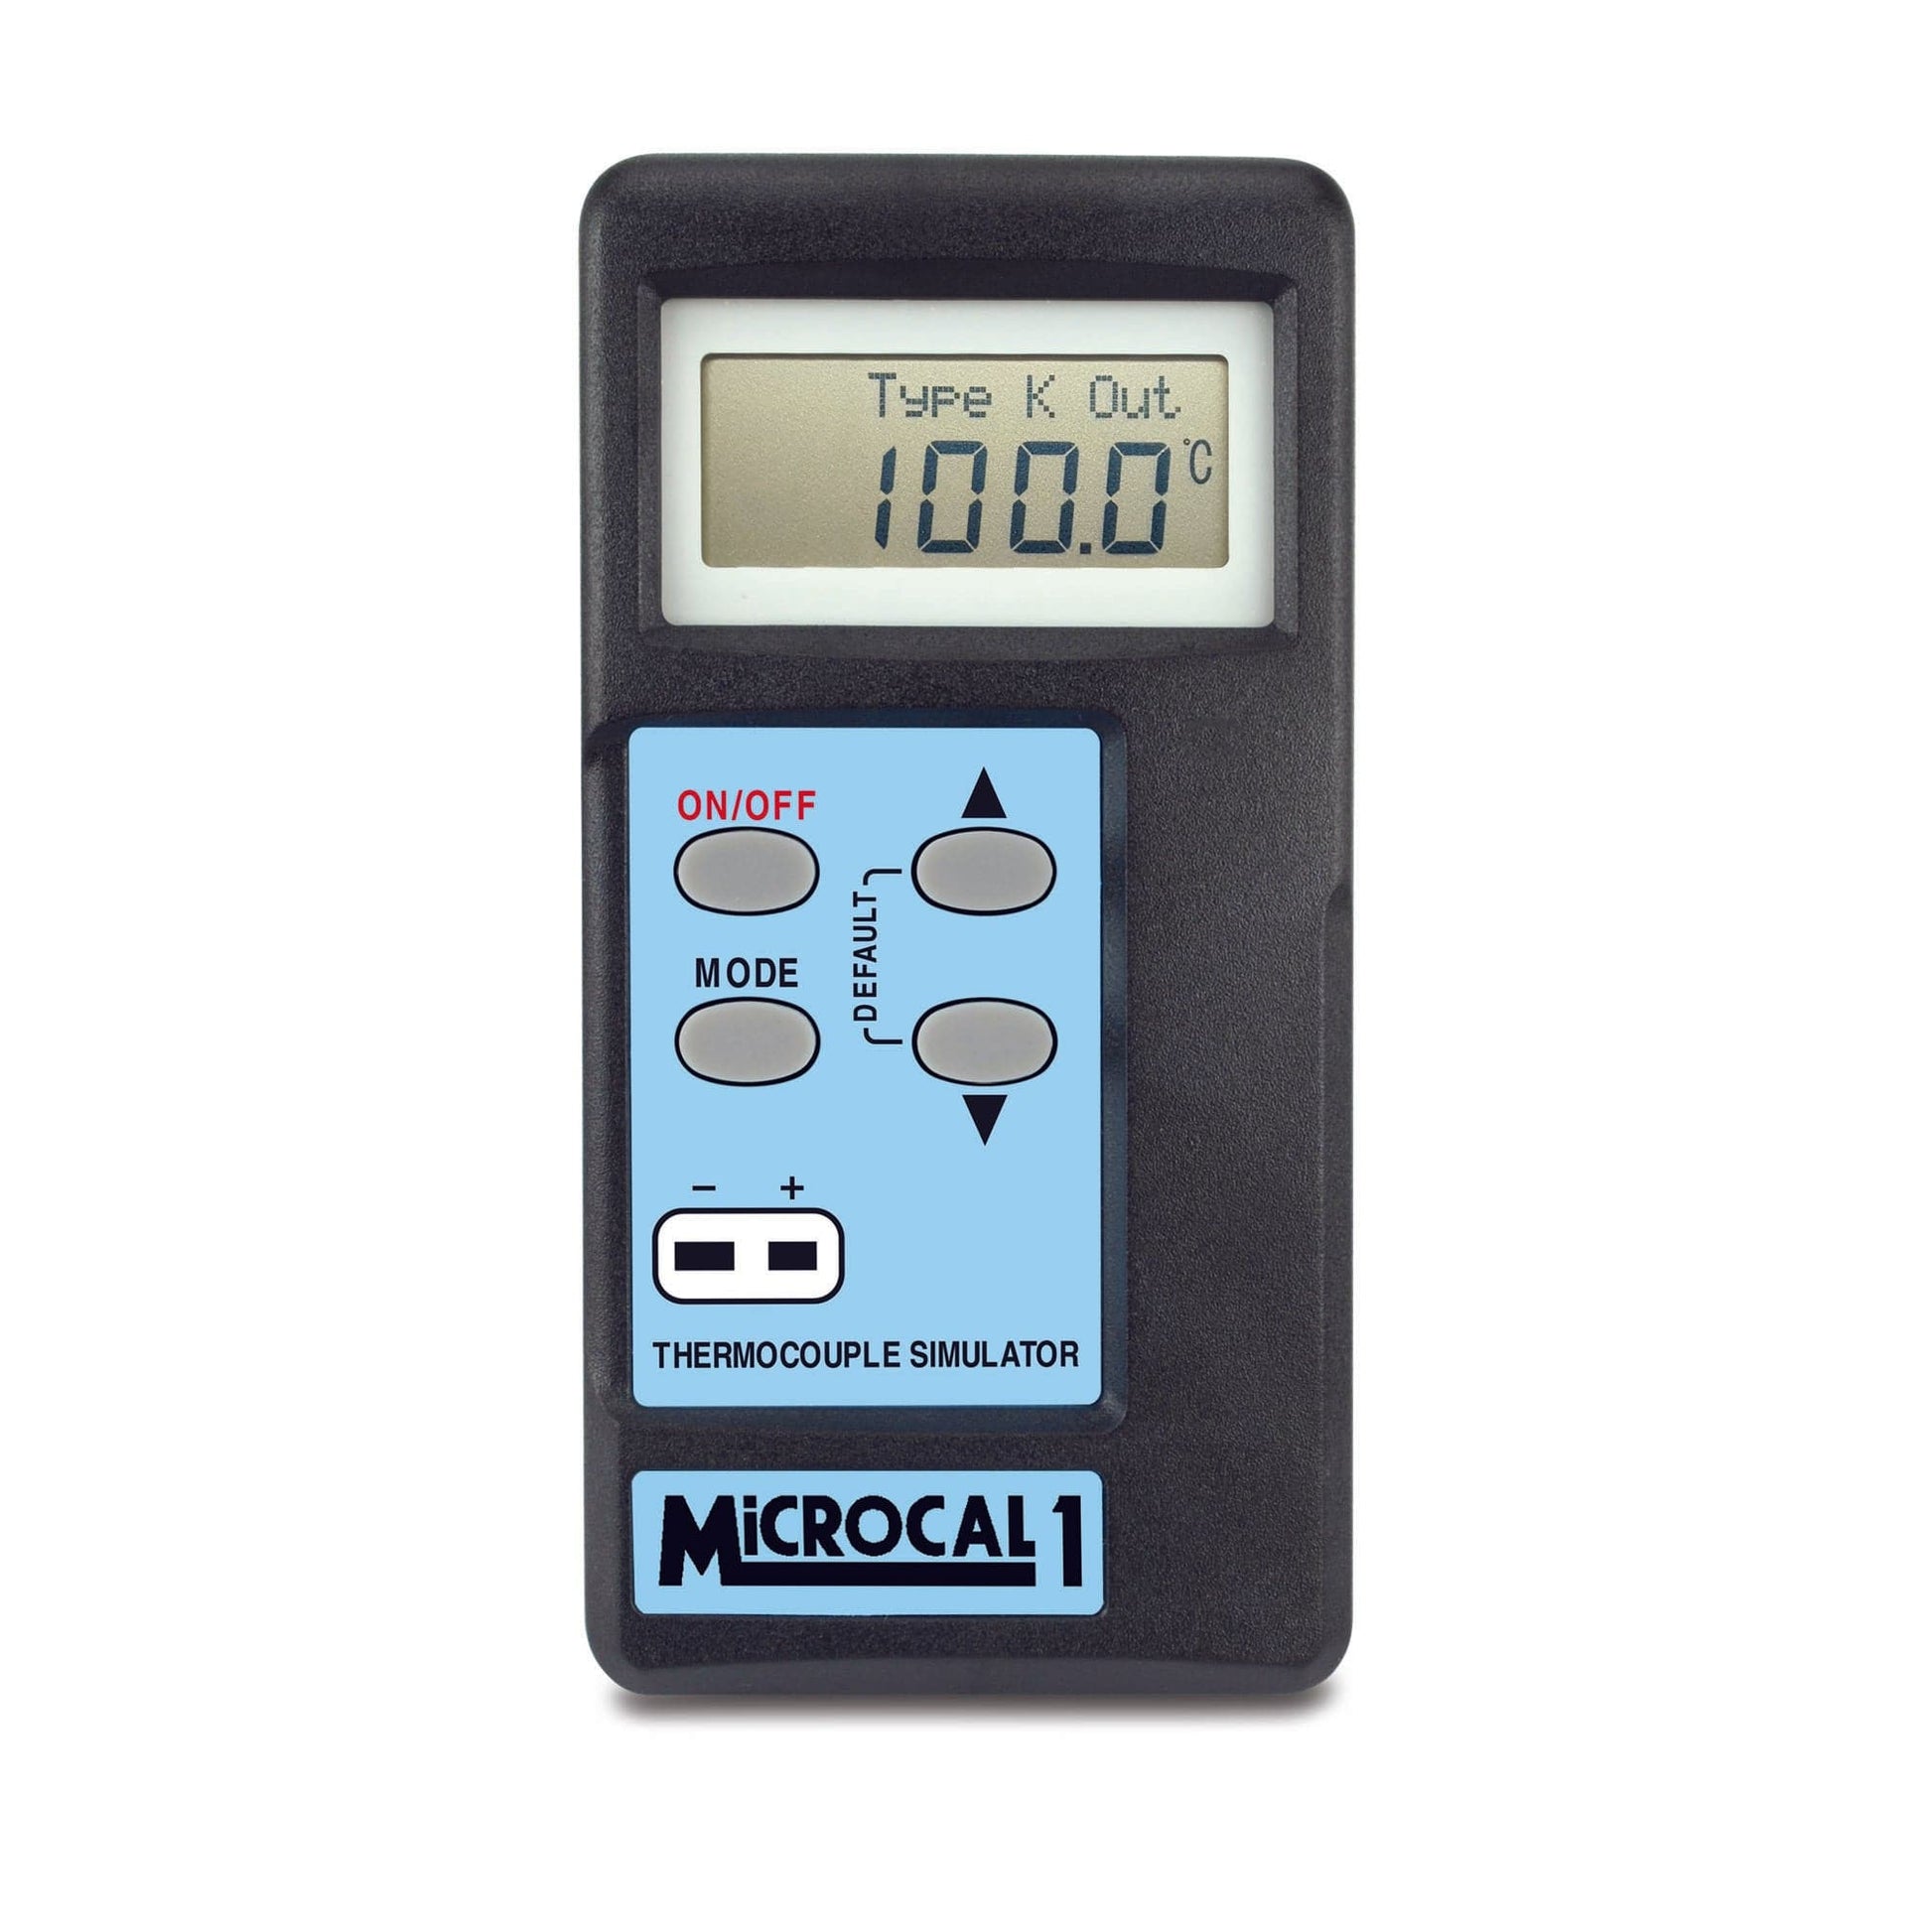 un Thermomètre simulateur MicroCal 1 & 1 Plus de Thermometre.fr sur fond blanc.